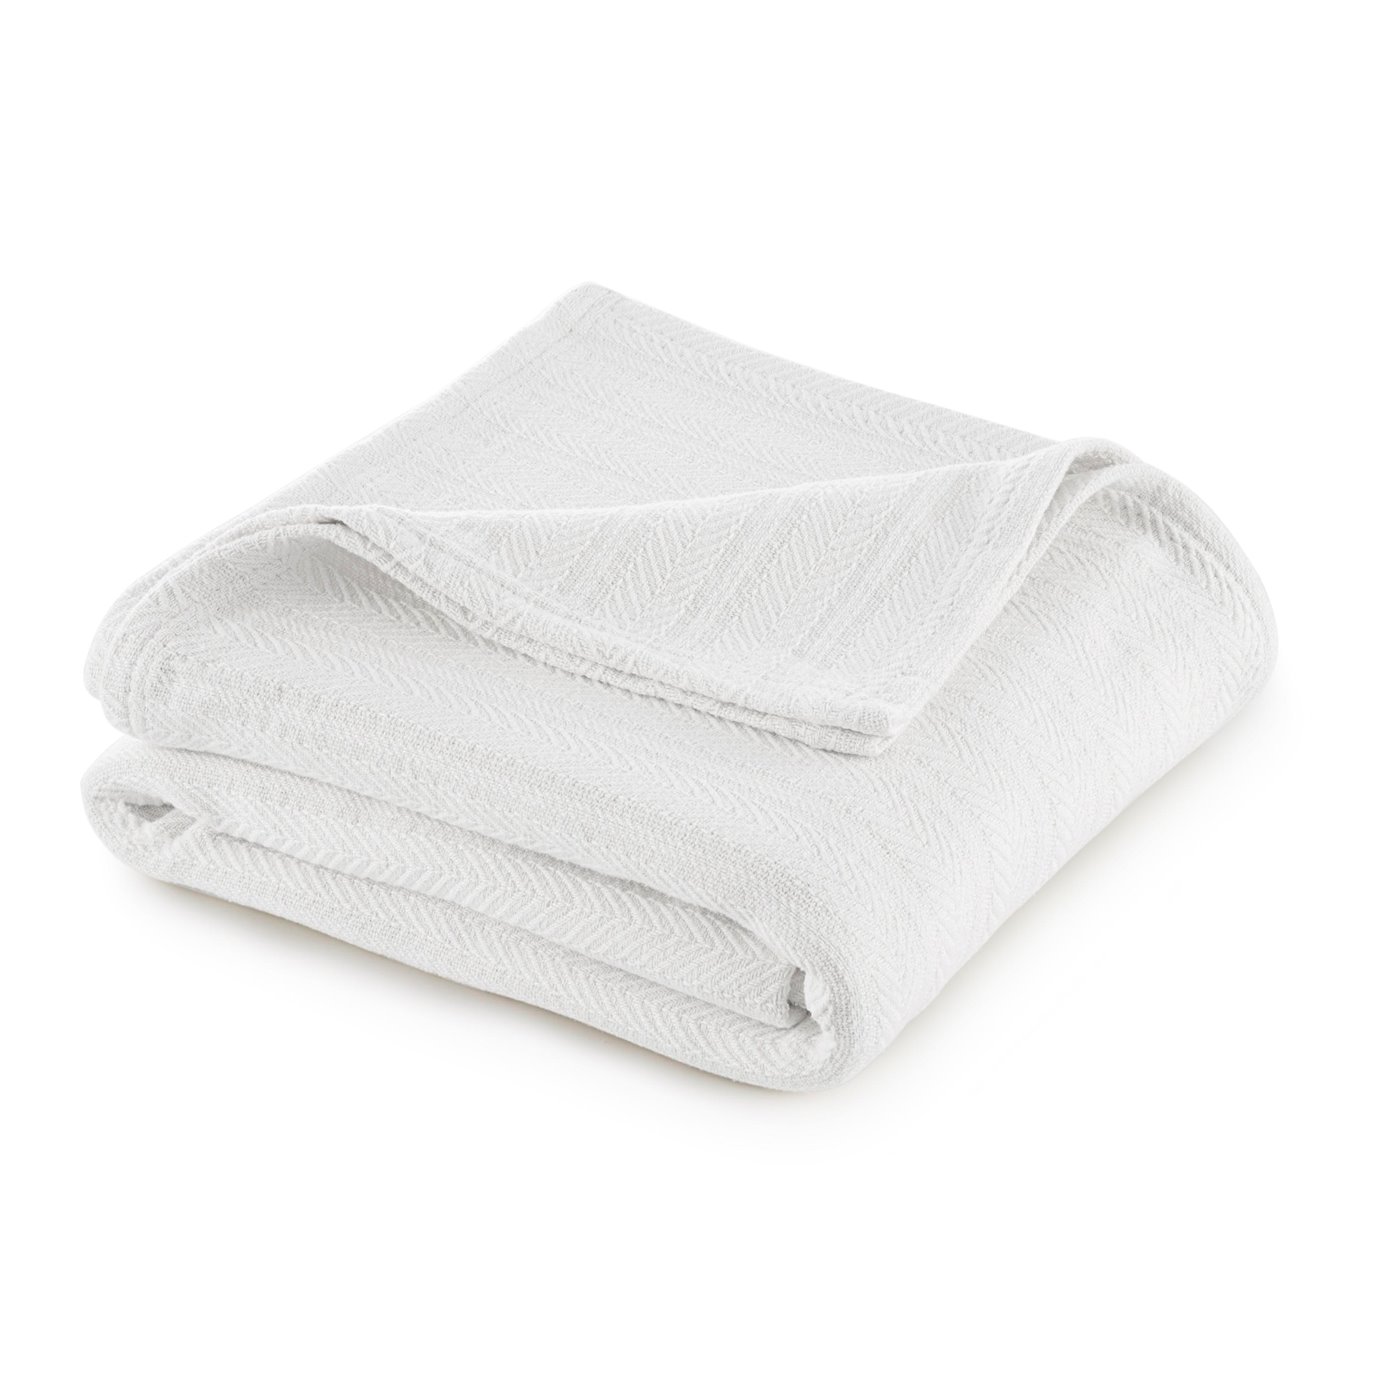 Vellux Cotton King White Blanket